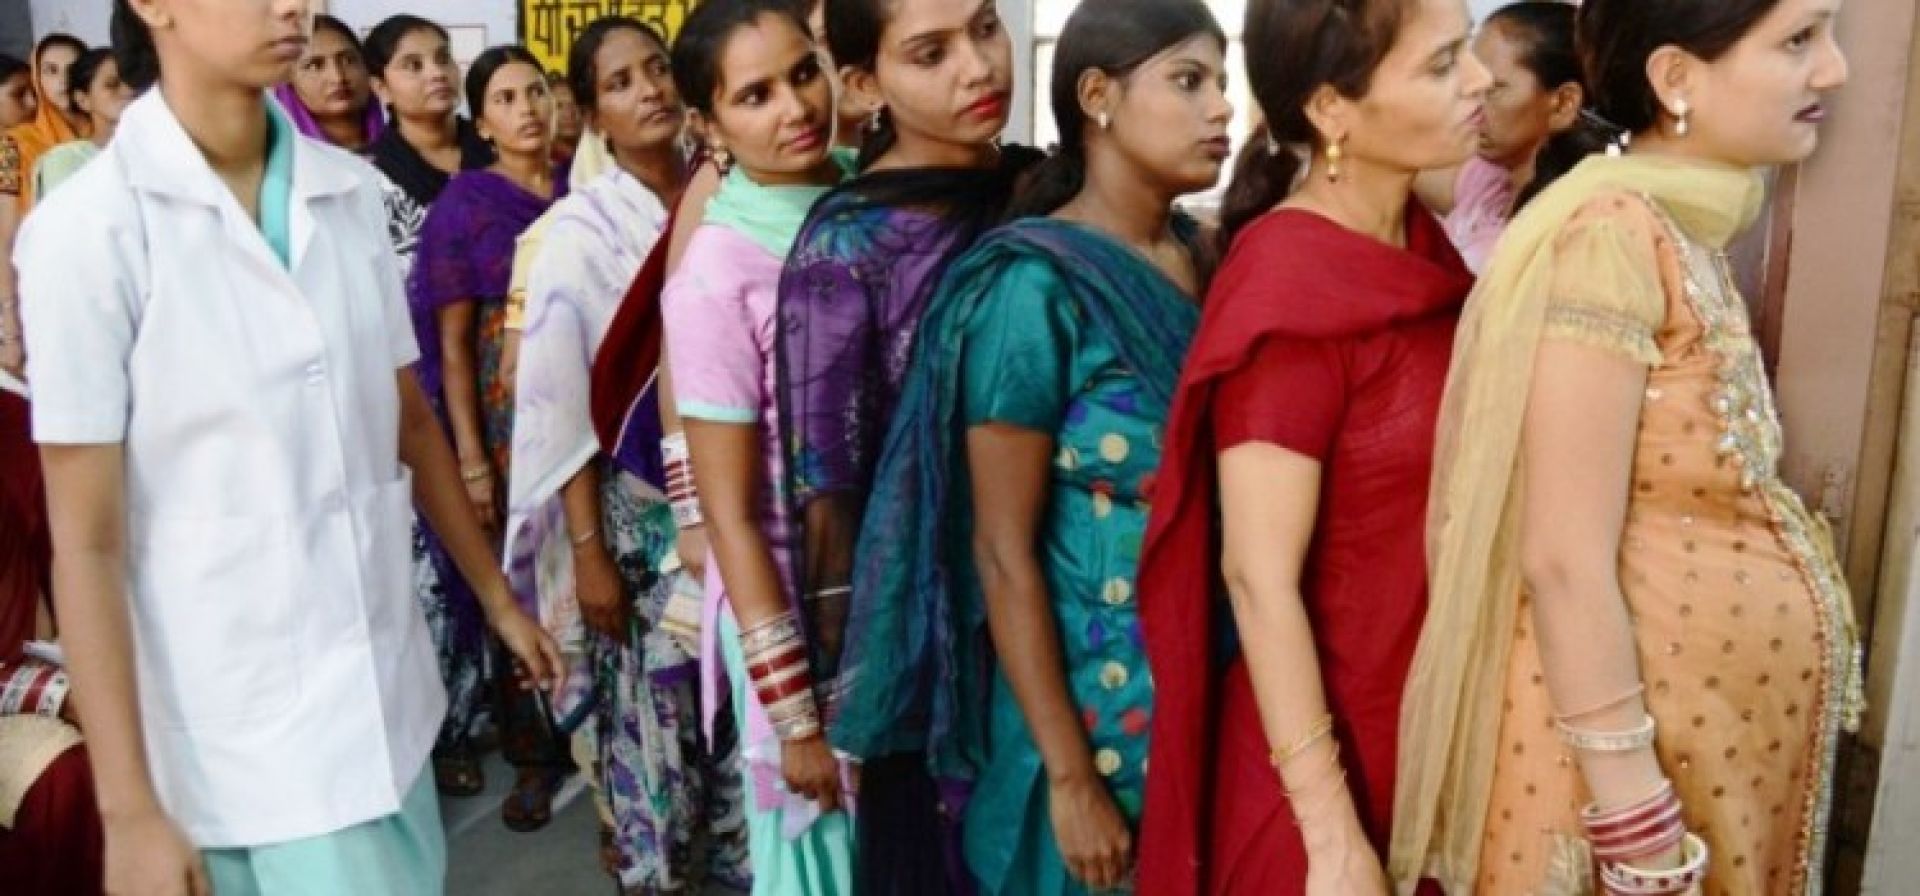 Η Ινδία θα μπορούσε να απαγορεύσει την εμπορευματοποίηση της παρένθετης μητρότητας Η Ινδία θα μπορούσε να απαγορεύσει την εμπορευματοποίηση της παρένθετης μητρότητας